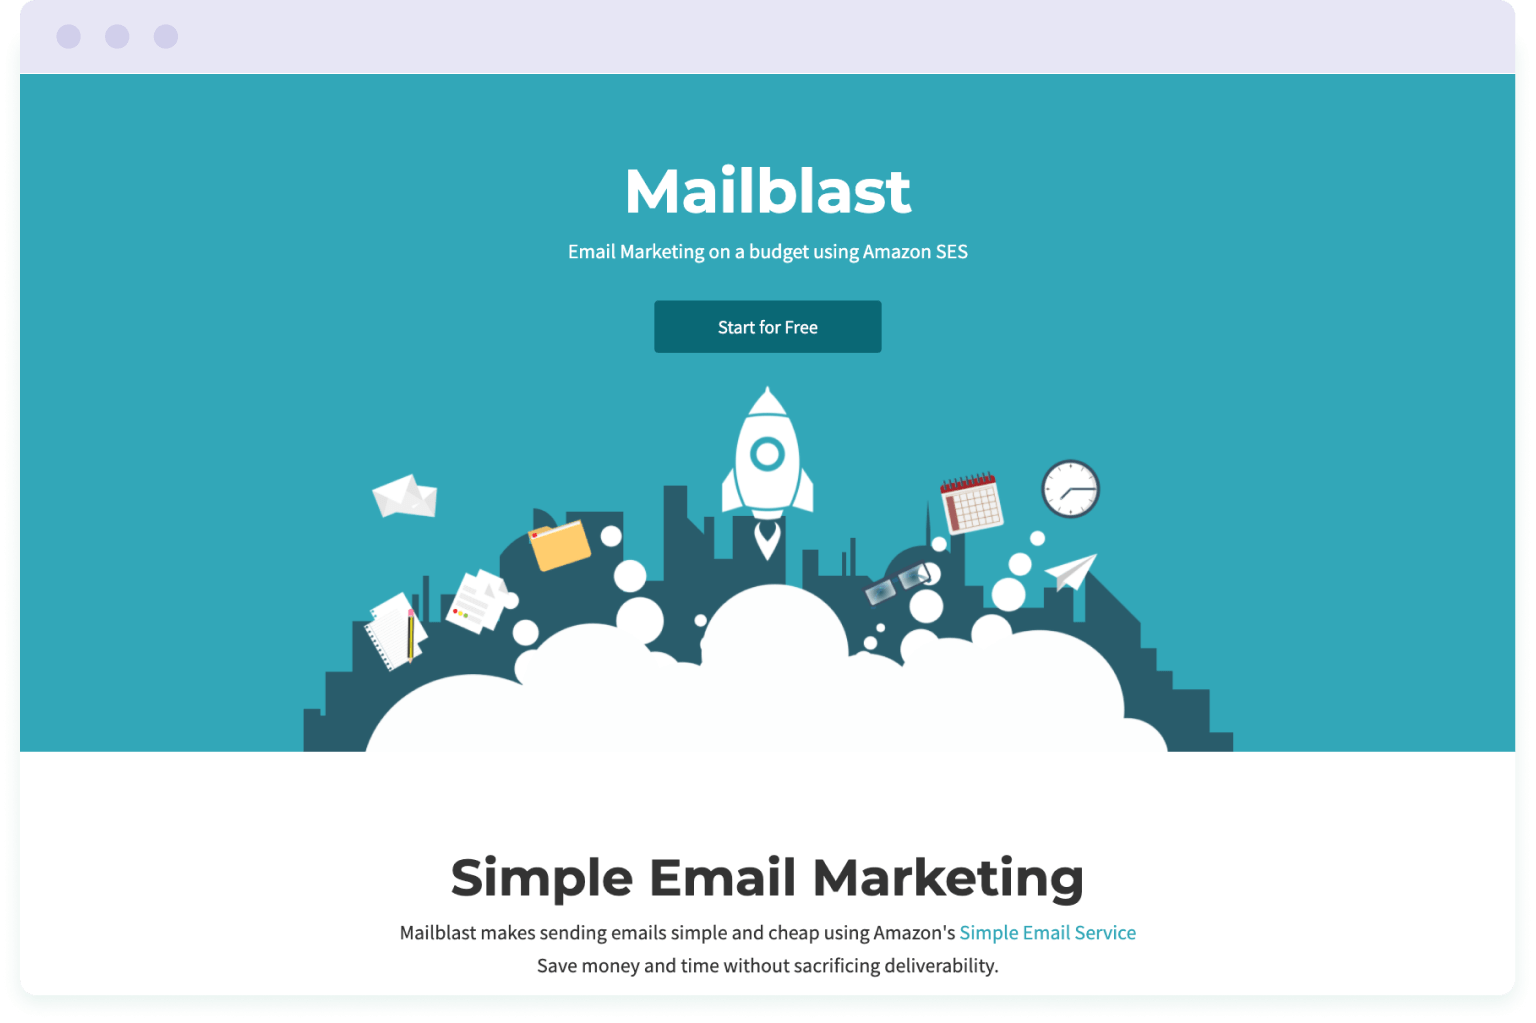 Image of Mailblast website homepage